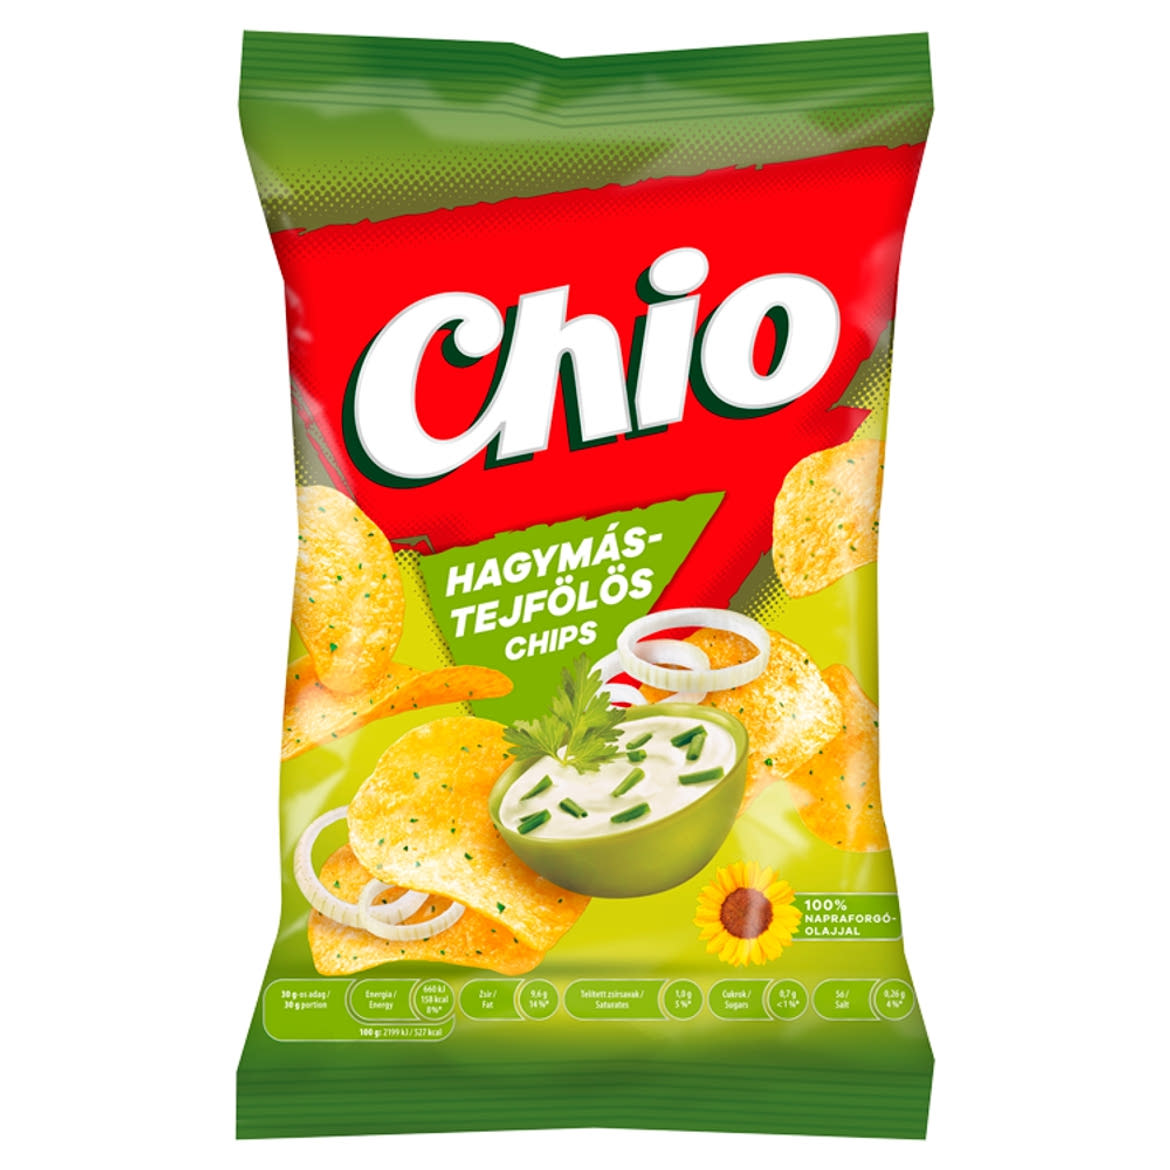 Chio hagymás-tejfölös chips